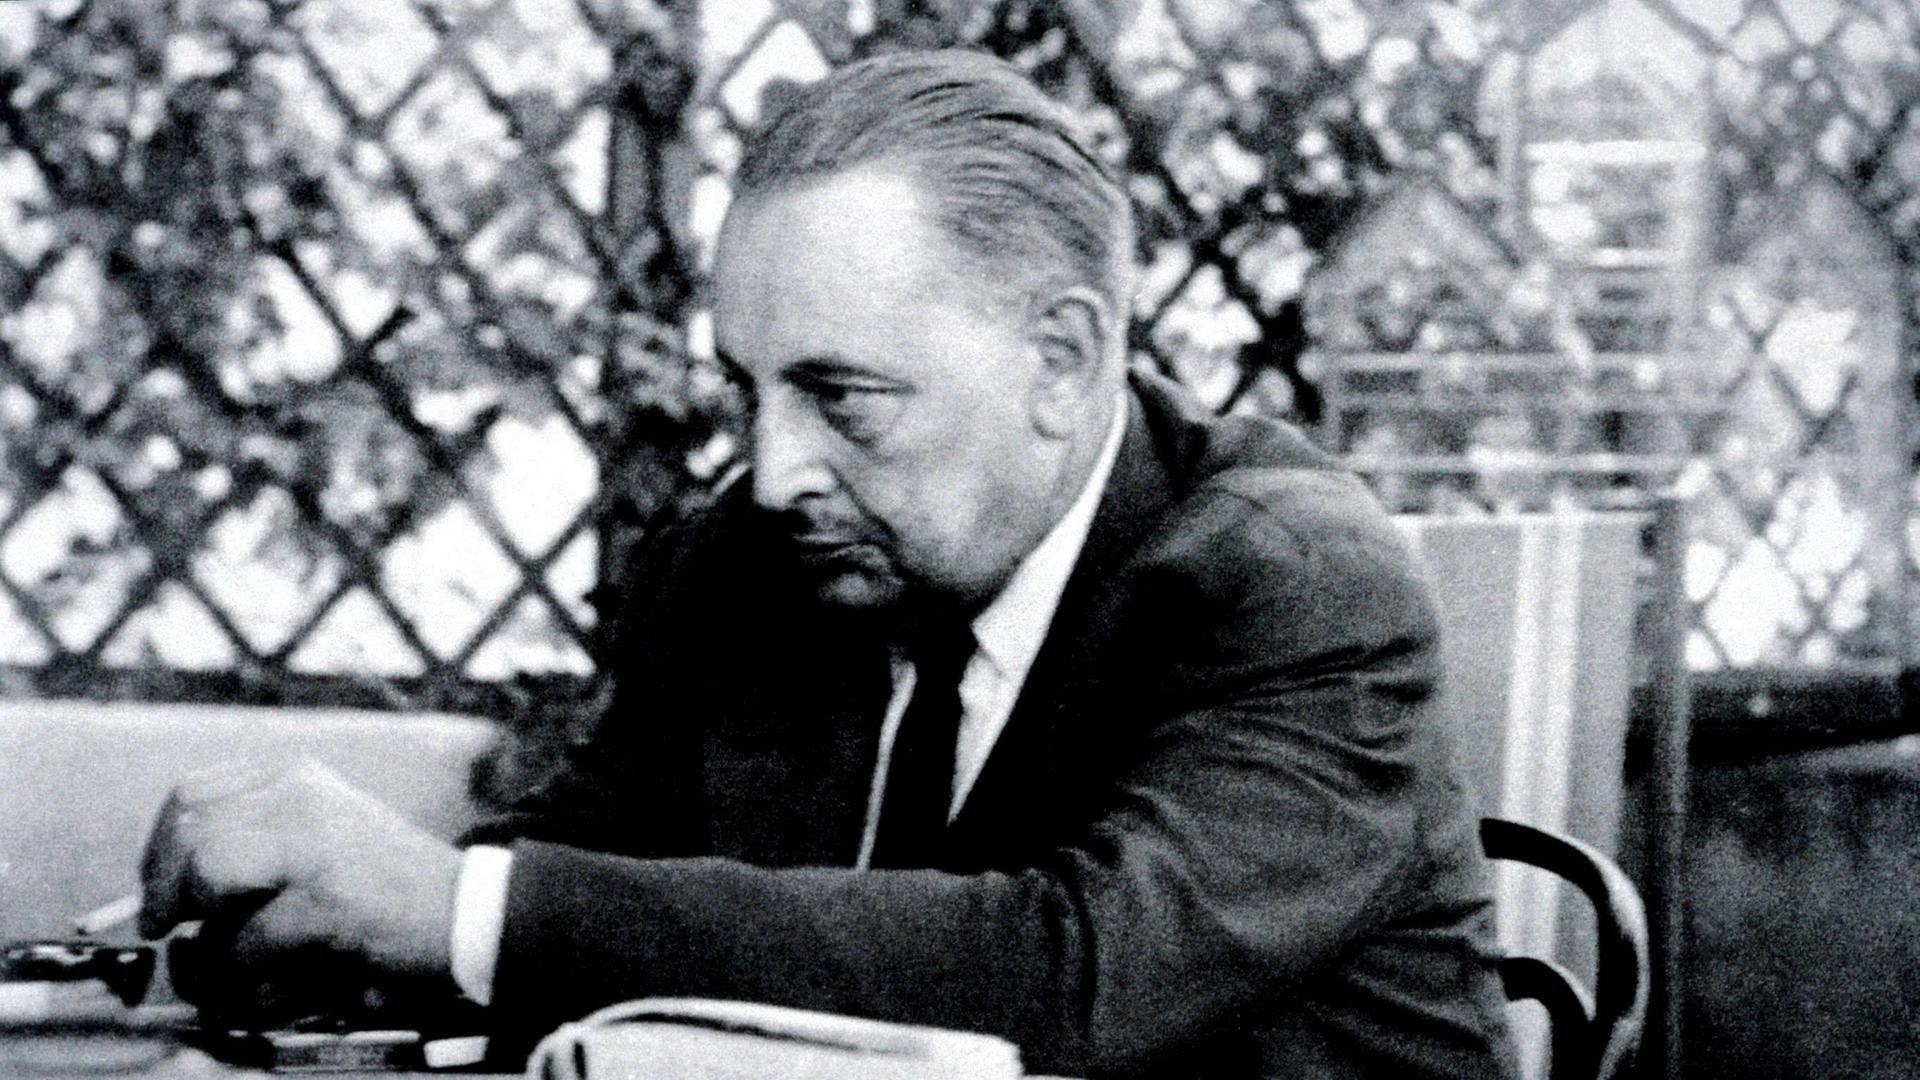 Der Schriftsteller Giuseppe Tomasi di Lampedusa  in den späten 1940er-Jahren